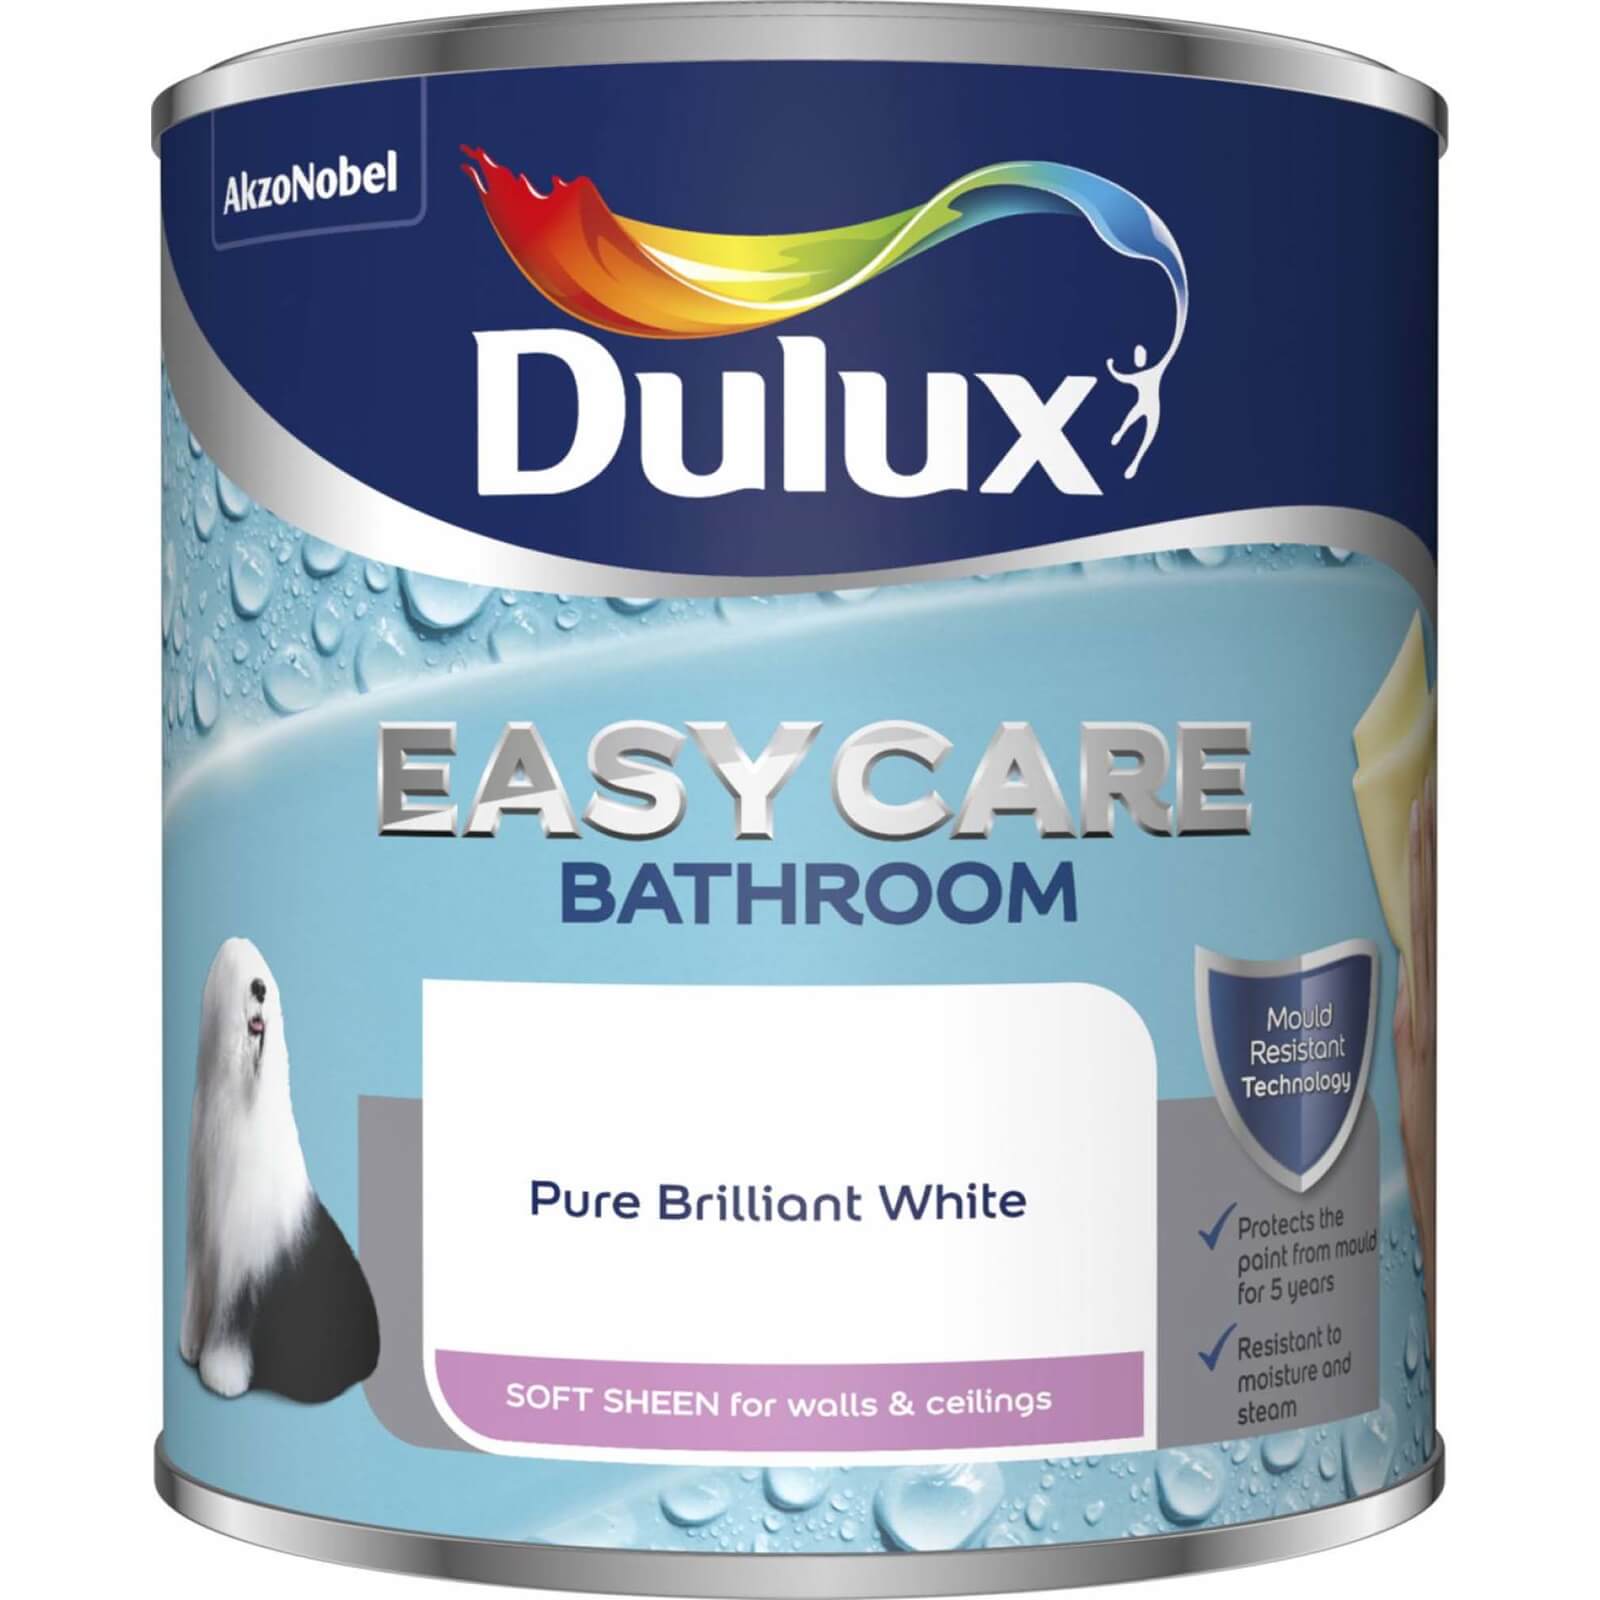 Dulux Easycare Bathroom Soft Sheen Paint Pure Brilliant White - 1L